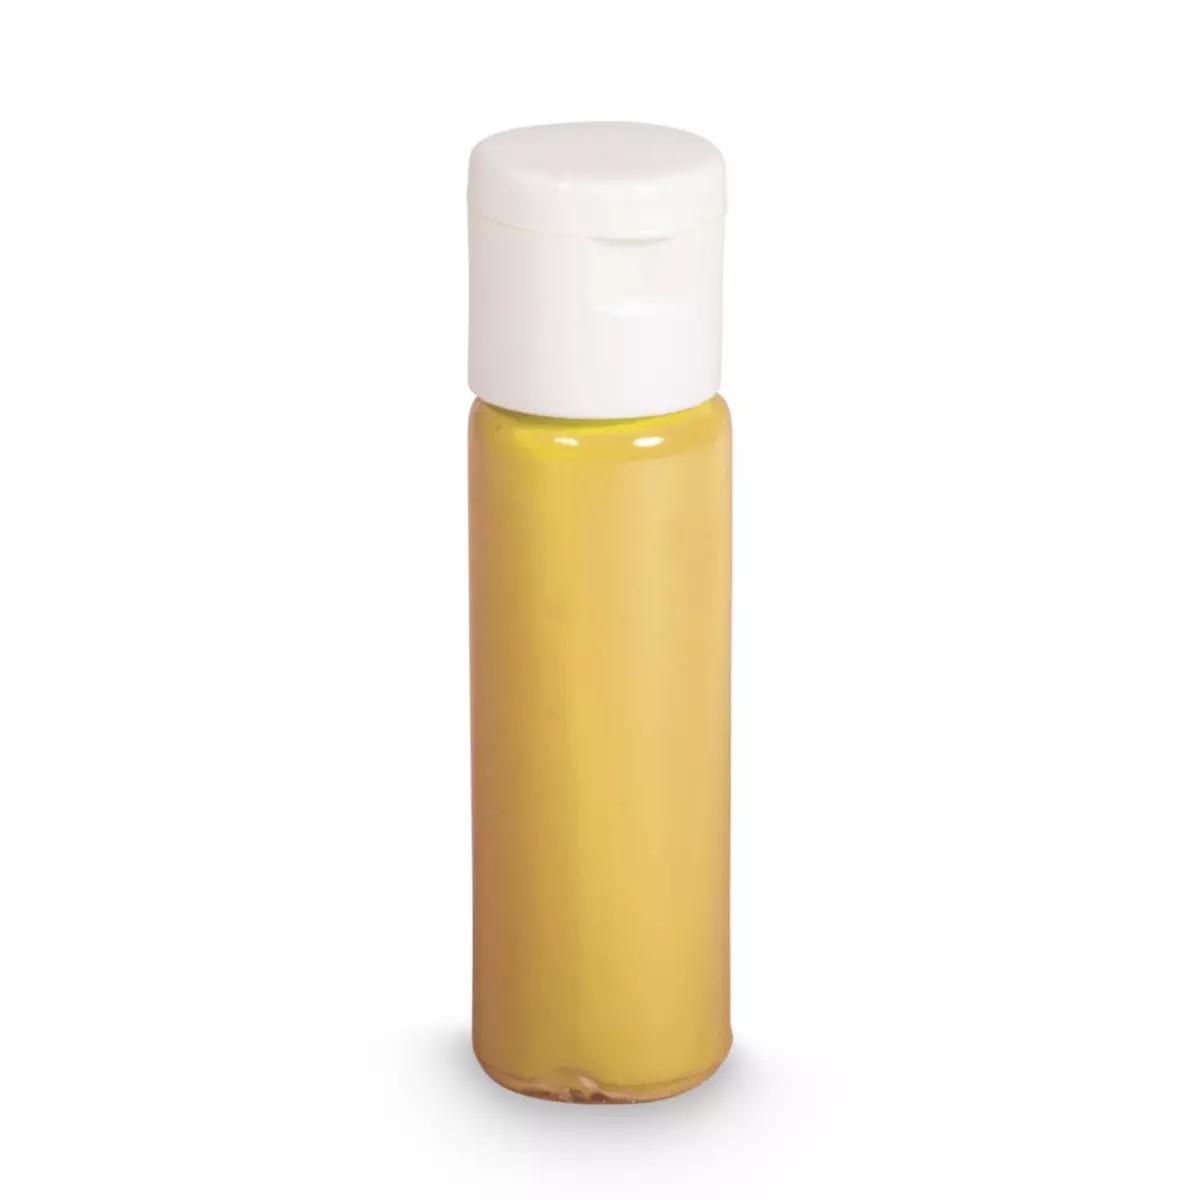 Rayher Pigment coloré, jaune d'or, Flacon PET, Boite 20ml